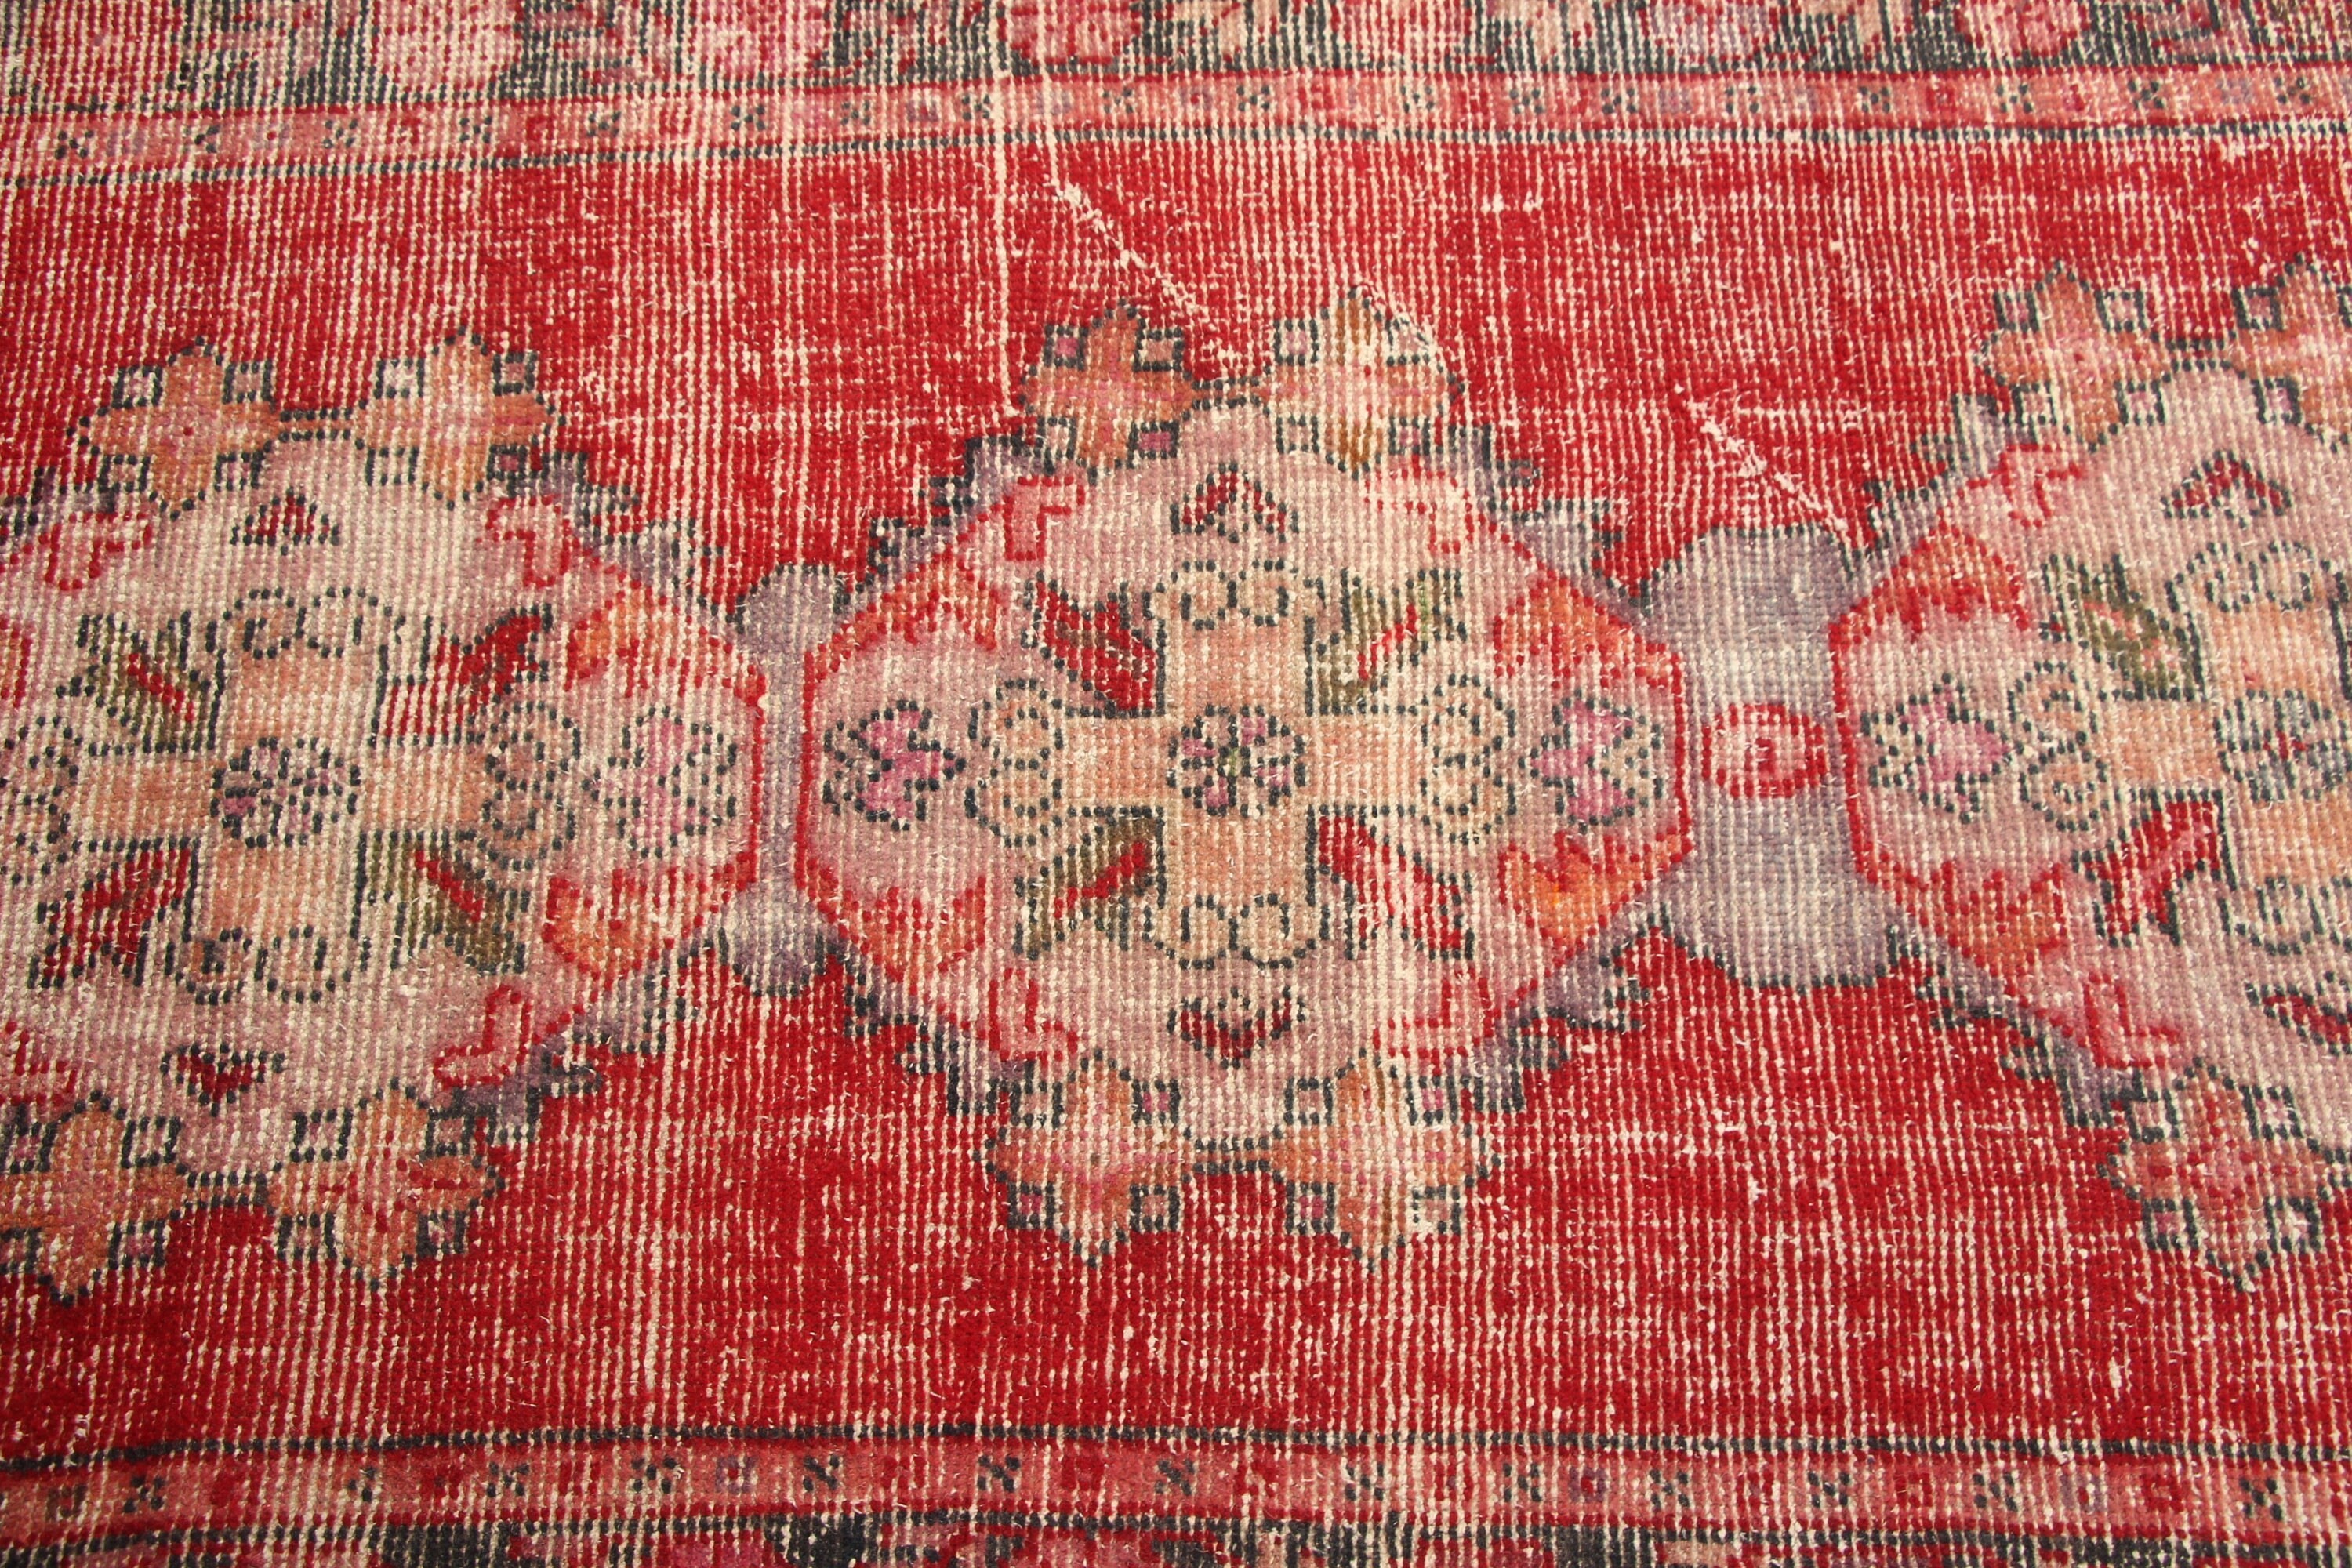 Oriental Rug, Moroccan Rug, Vintage Rug, Red Cool Rugs, Rugs for Corridor, 2.8x8.3 ft Runner Rugs, Kitchen Rug, Corridor Rugs, Turkish Rug